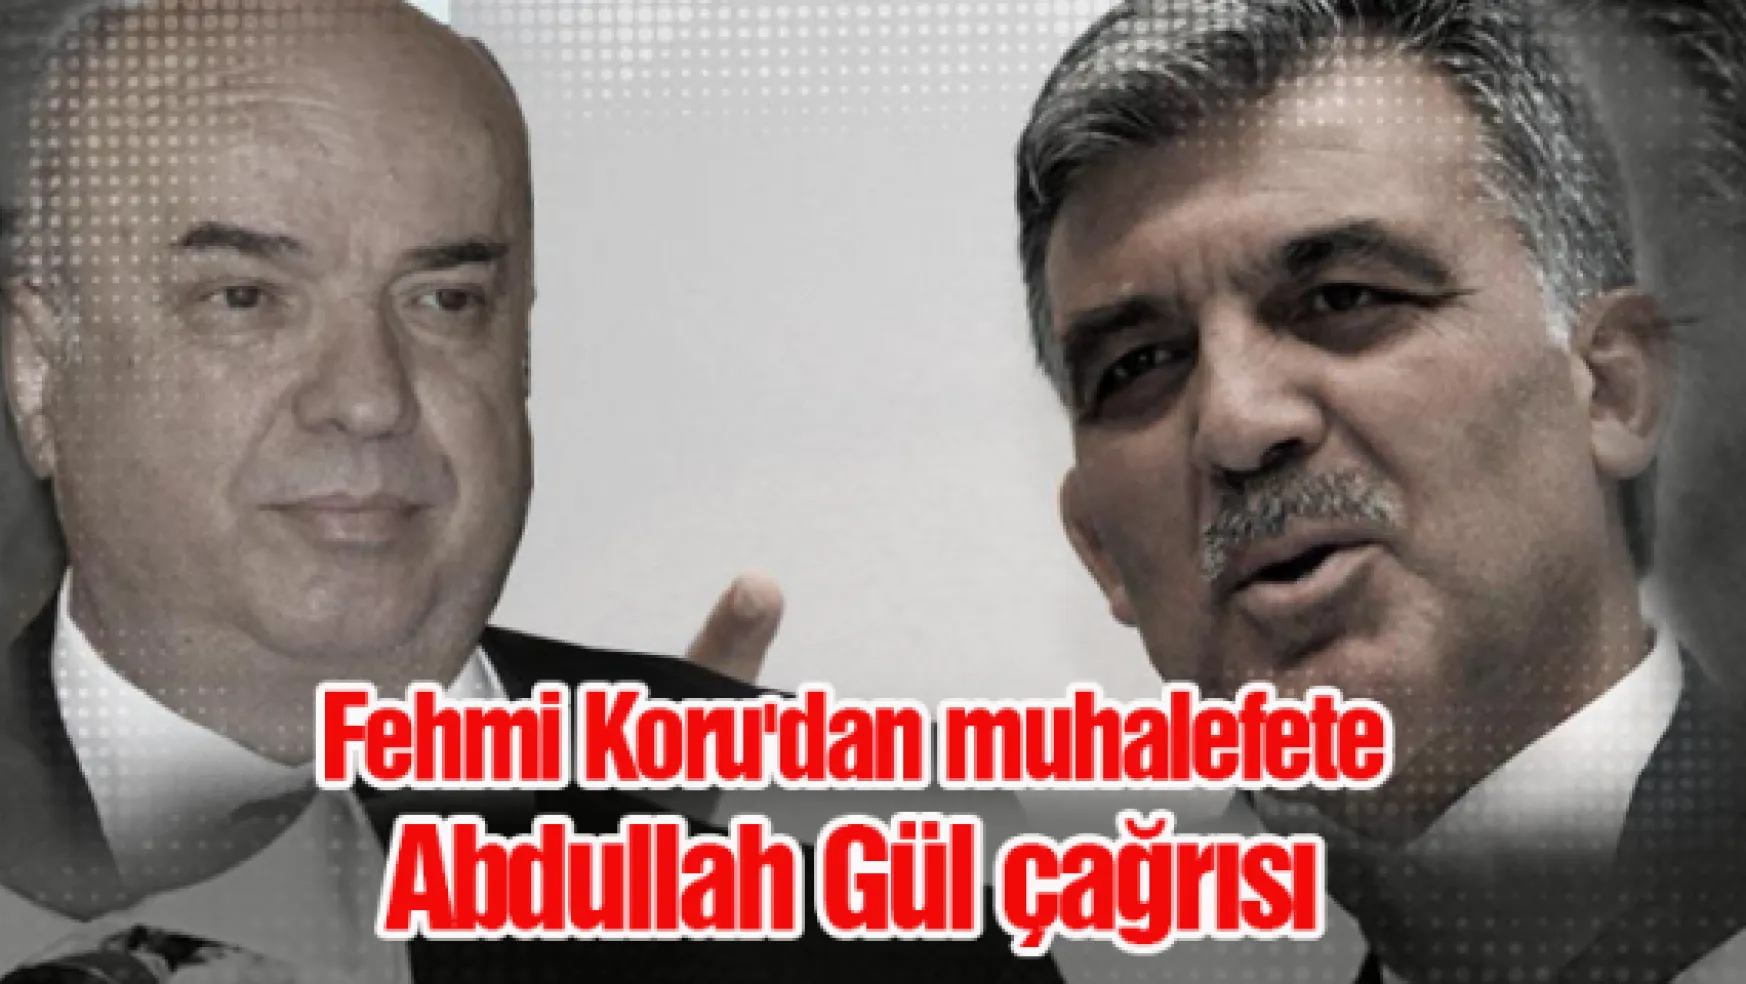 Fehmi Koru'dan muhalefete Abdullah Gül çağrısı